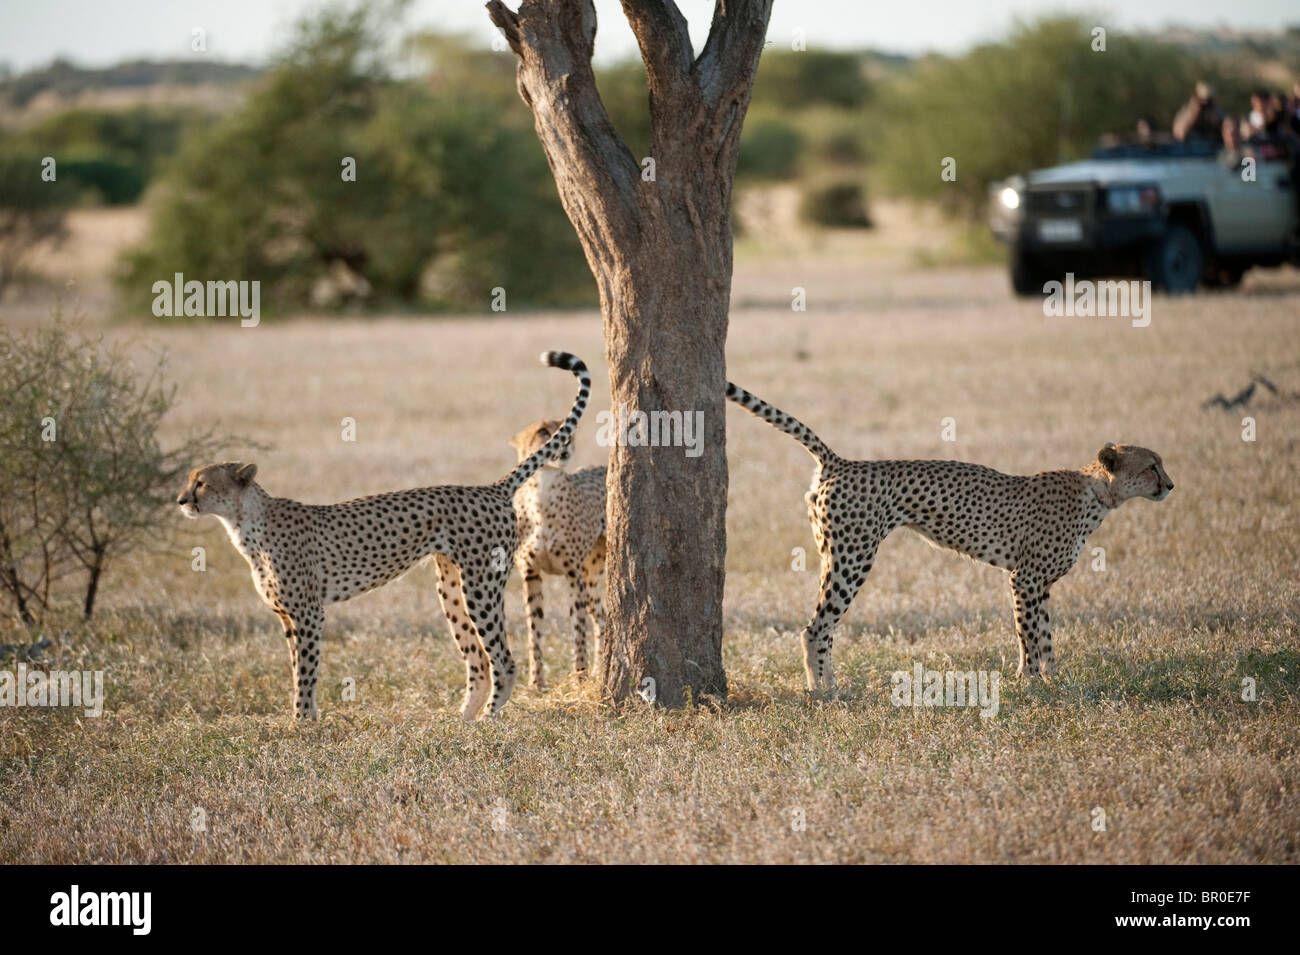 Tourists watching Cheetah on safari (Acinonyx jubatus), Mashatu Game Reserve, tuli block, Botswana Stock Photo